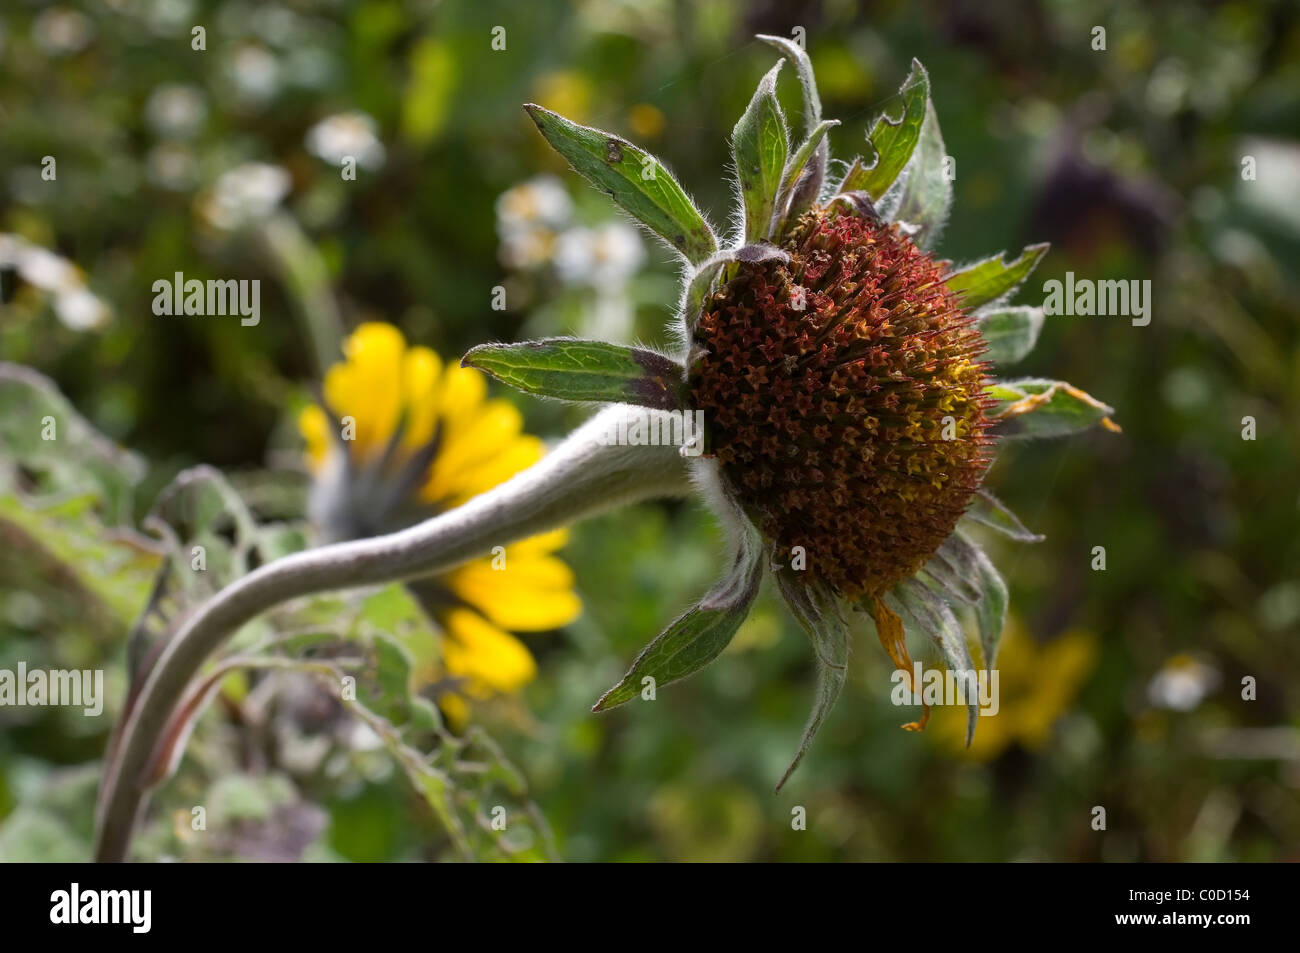 Wild Mexican sunflower (Girasol / Tithonia tubaeformis) Stock Photo